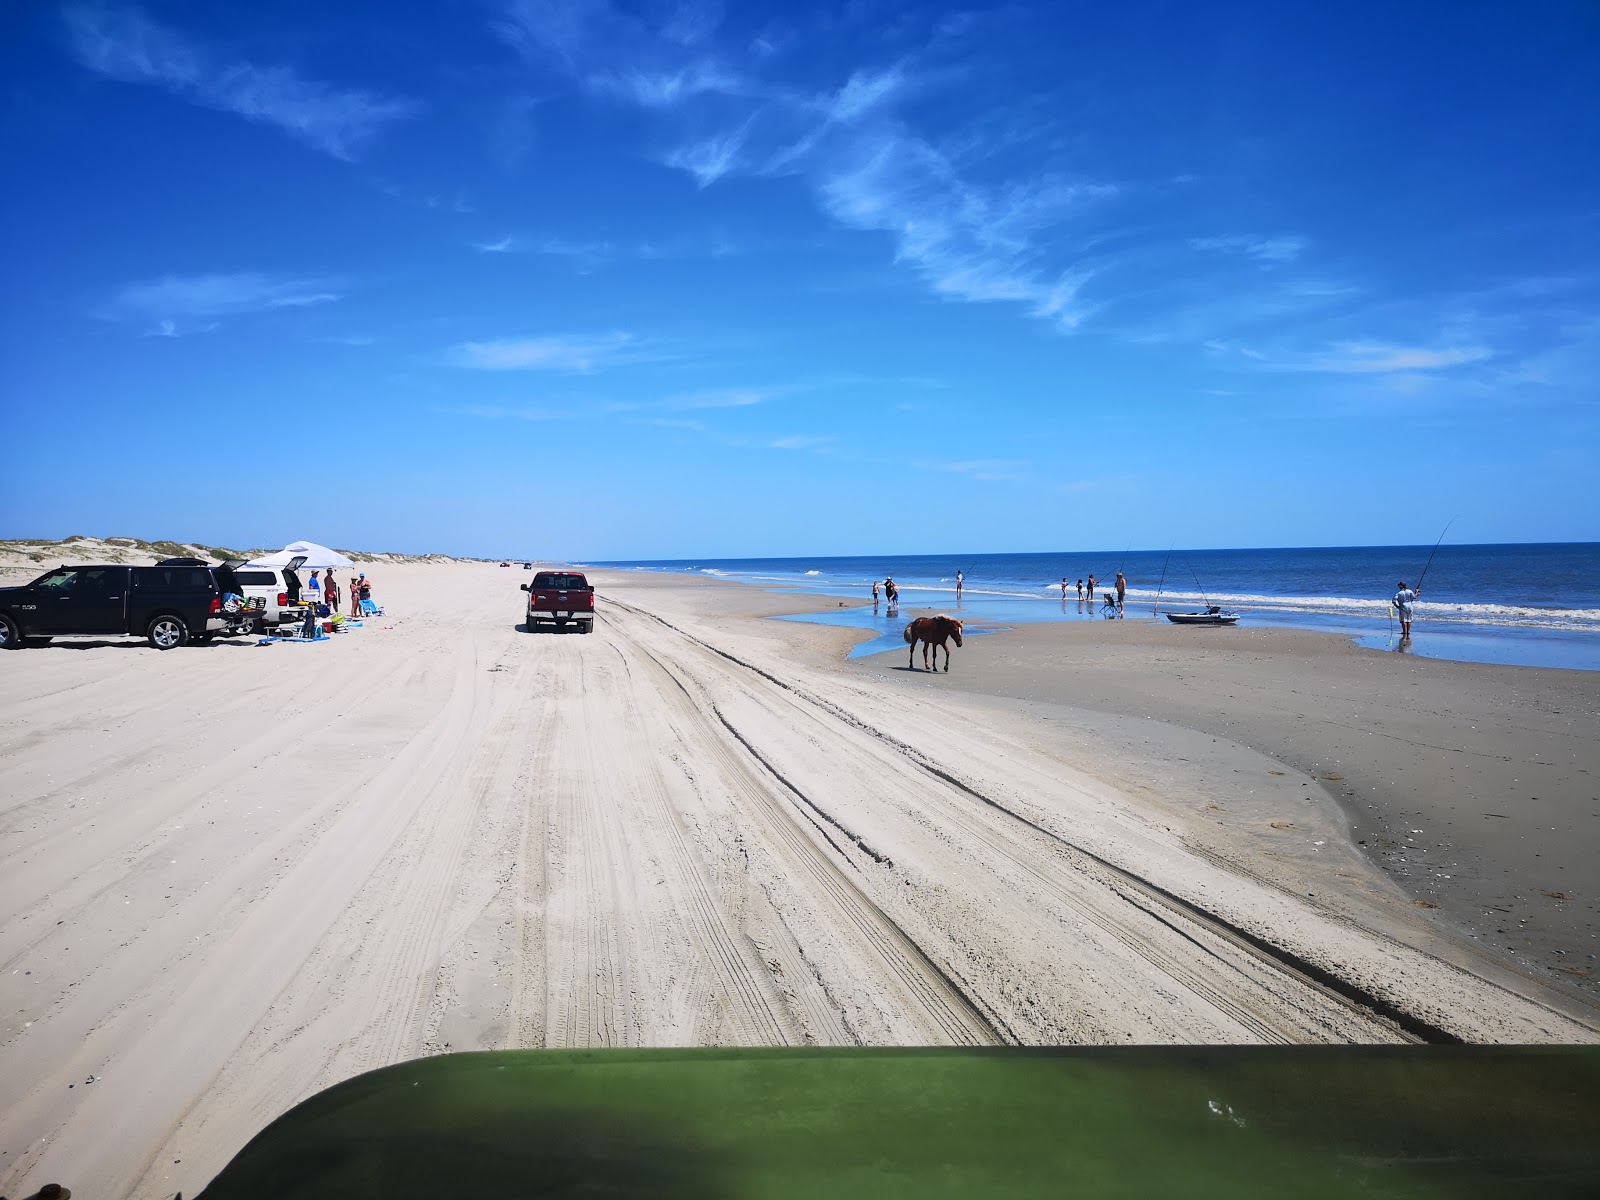 Fotografie cu Corolla beach II cu nivelul de curățenie înalt